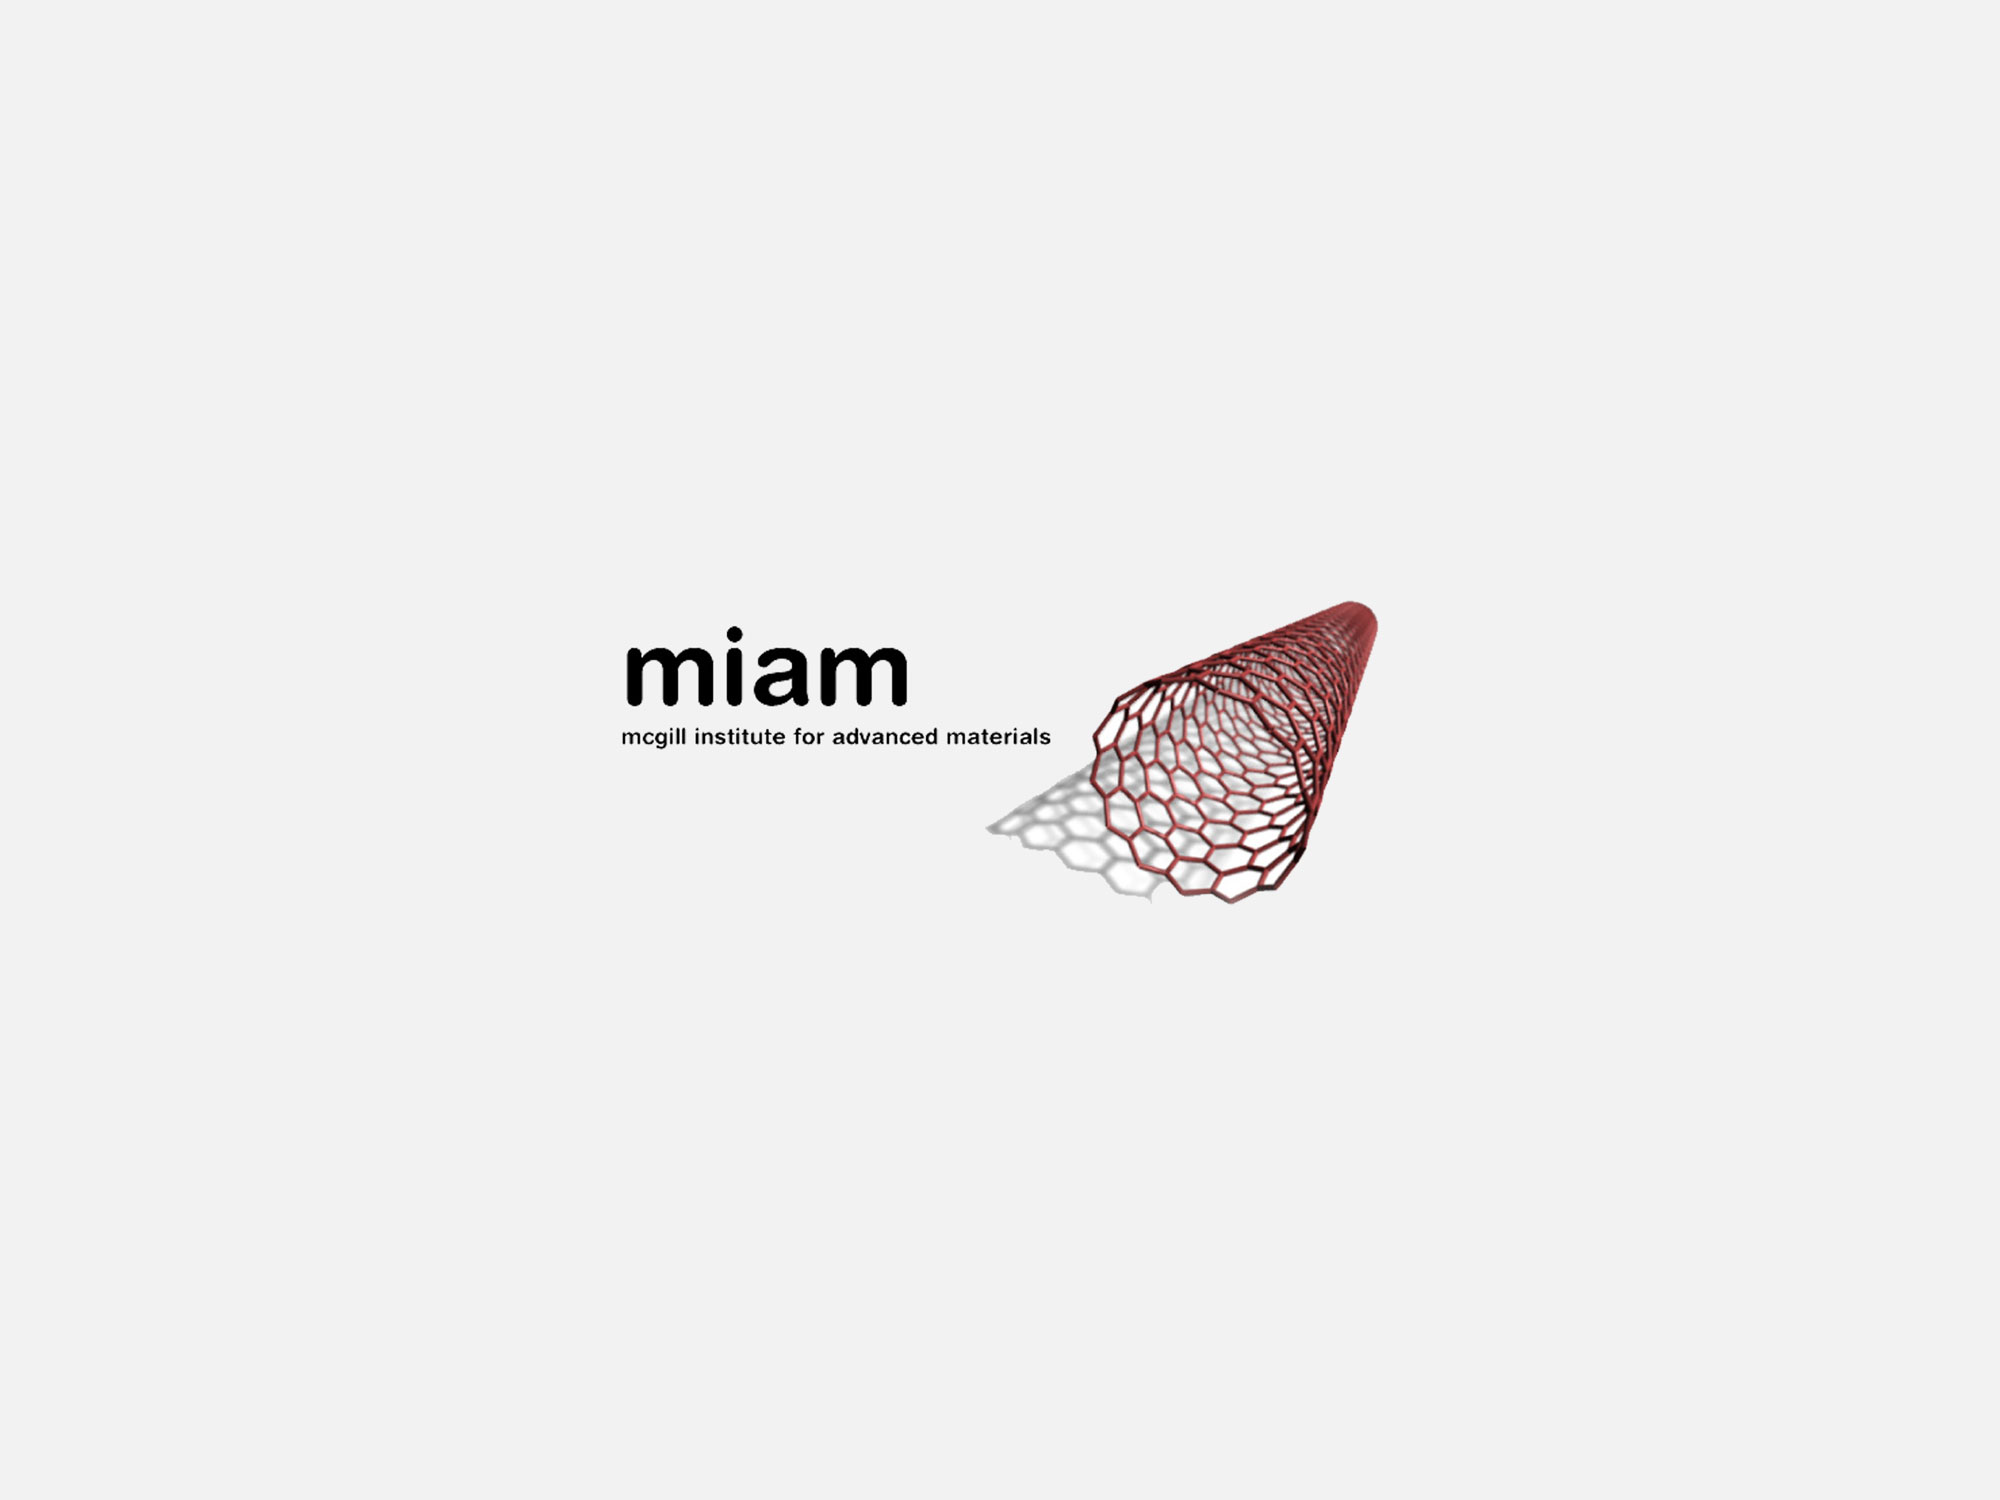 McGill Institute for Advance Materials (MIAM) logo